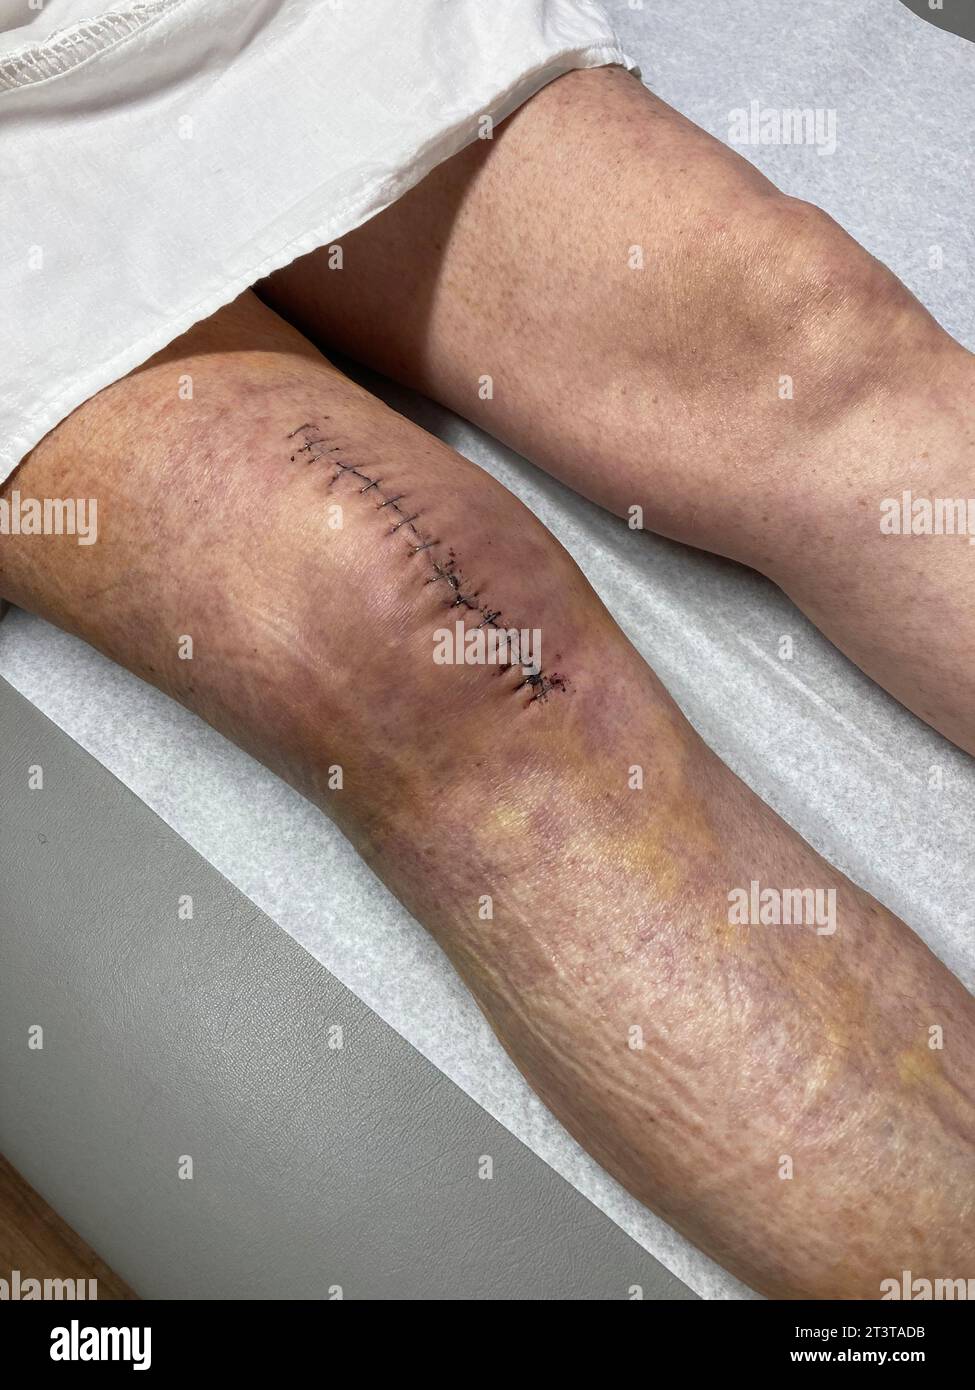 Femme avec une grande cicatrice sur le genou après chirurgie Banque D'Images